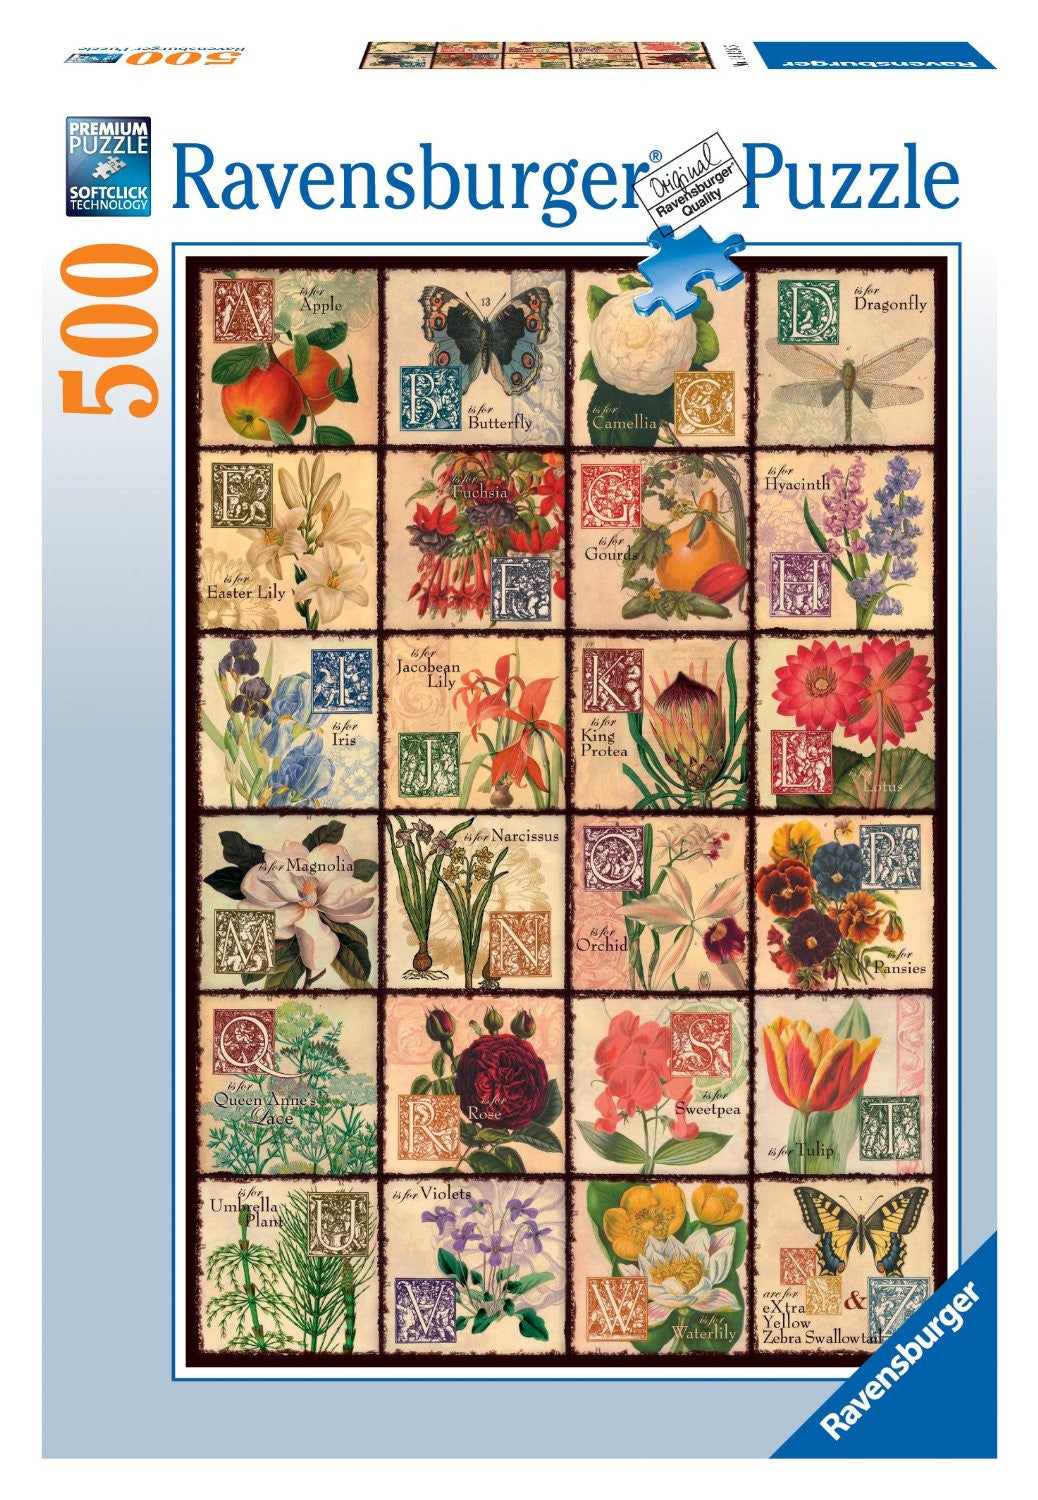 Ravensburger Adult Puzzles 500 pc Puzzles - Vintage Flora 14126